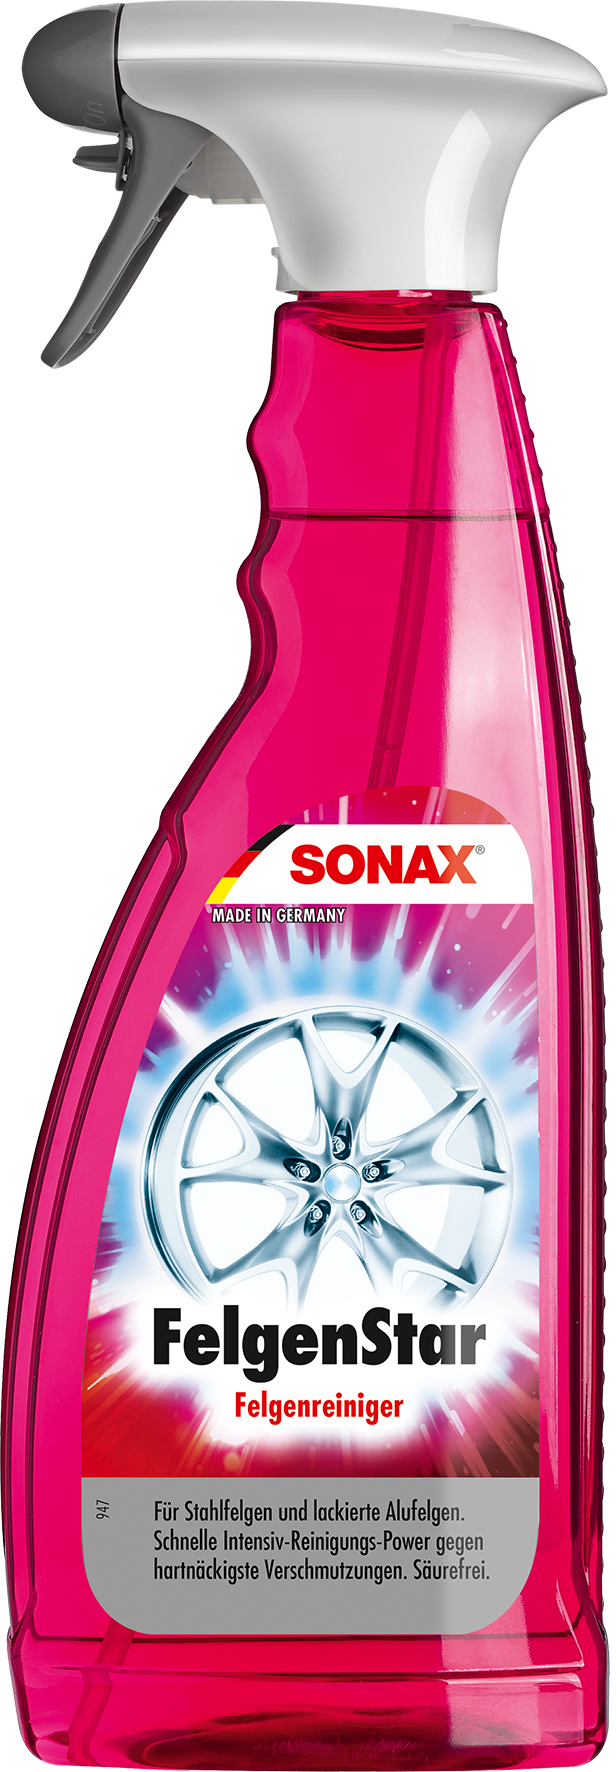 Sonax 02274000 FelgenStar 750ml